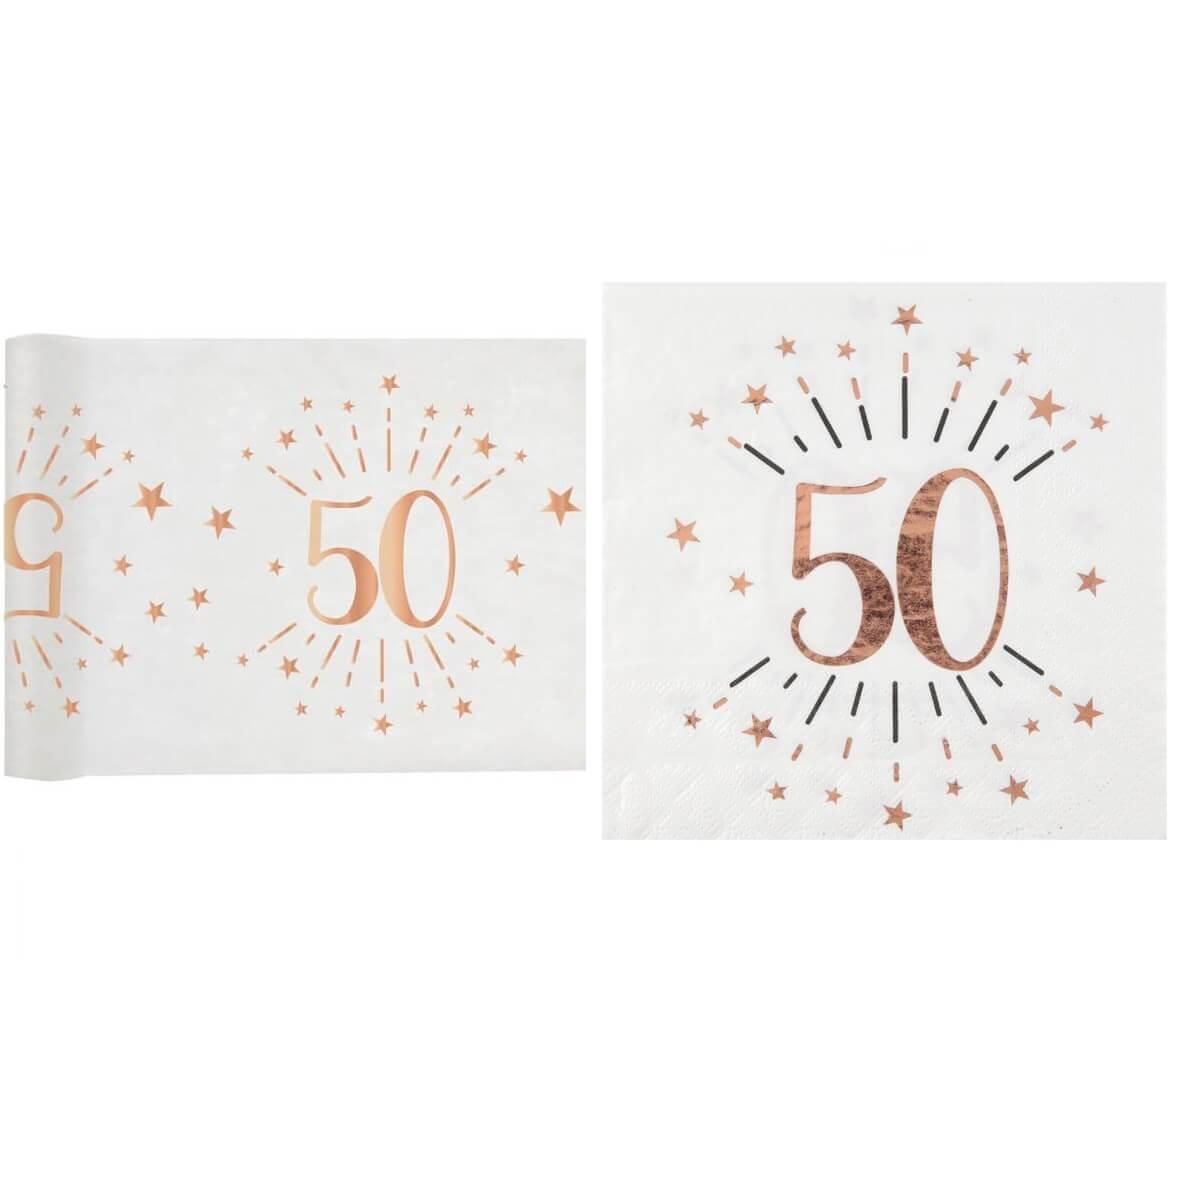 Décoration anniversaire 50ans avec serviette et chemin de table.